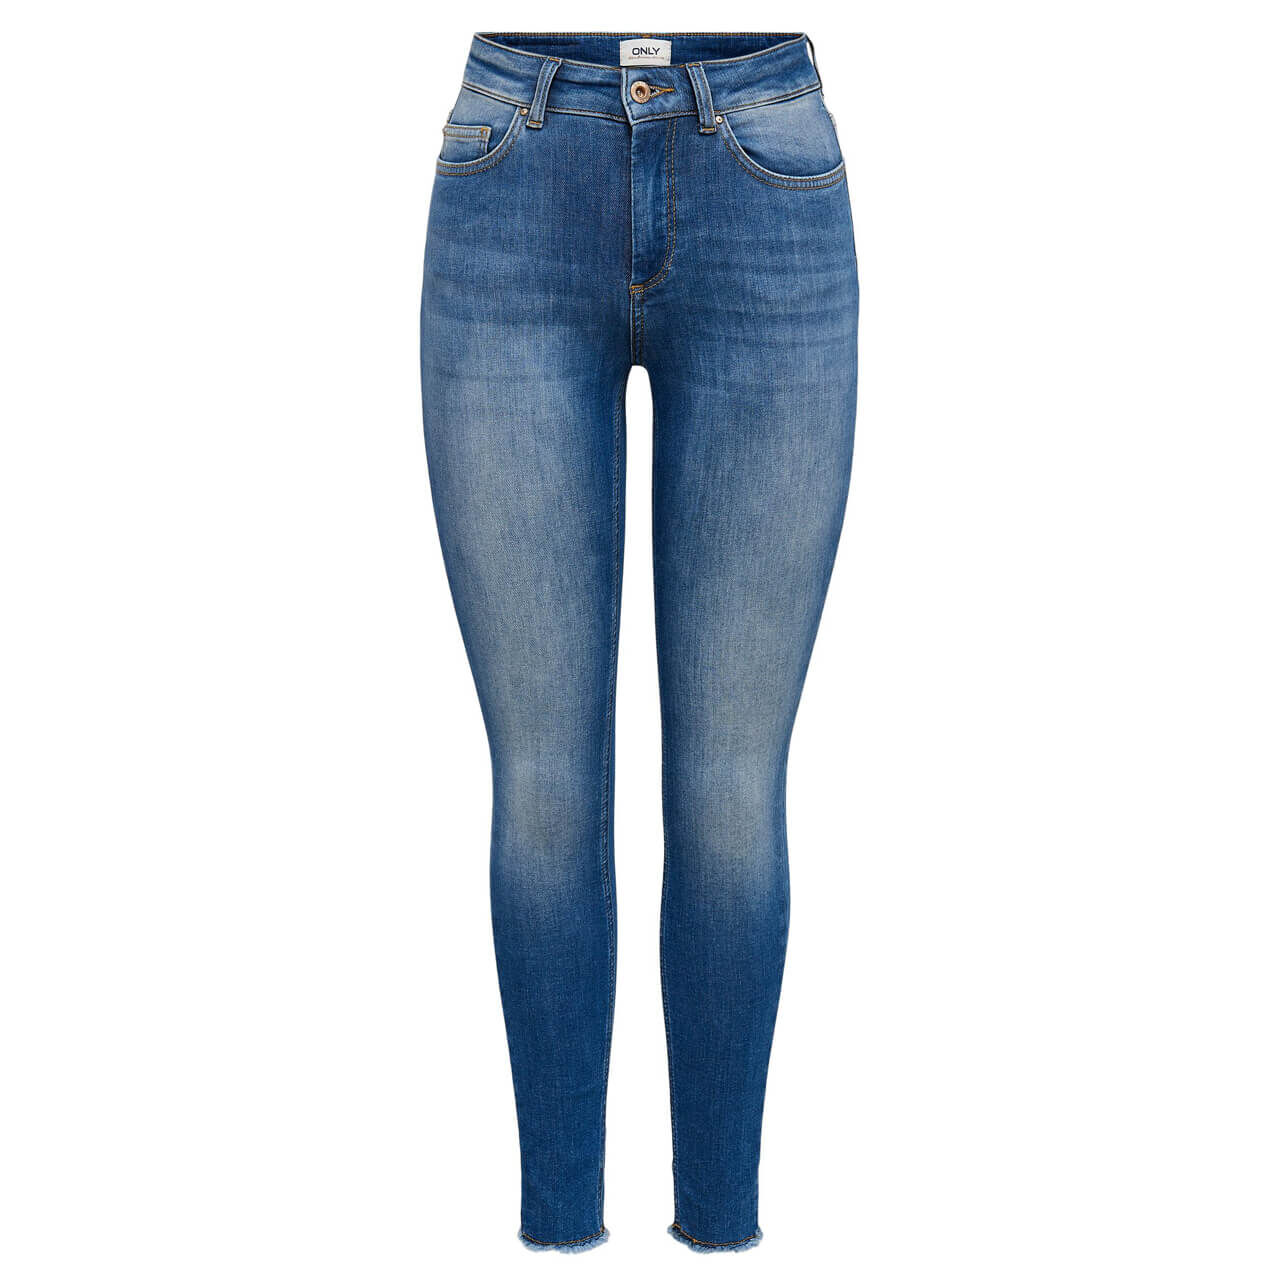 Only Jeans Blush Ankle Skinny für Damen in Blau verwaschen, FarbNr.: 179695